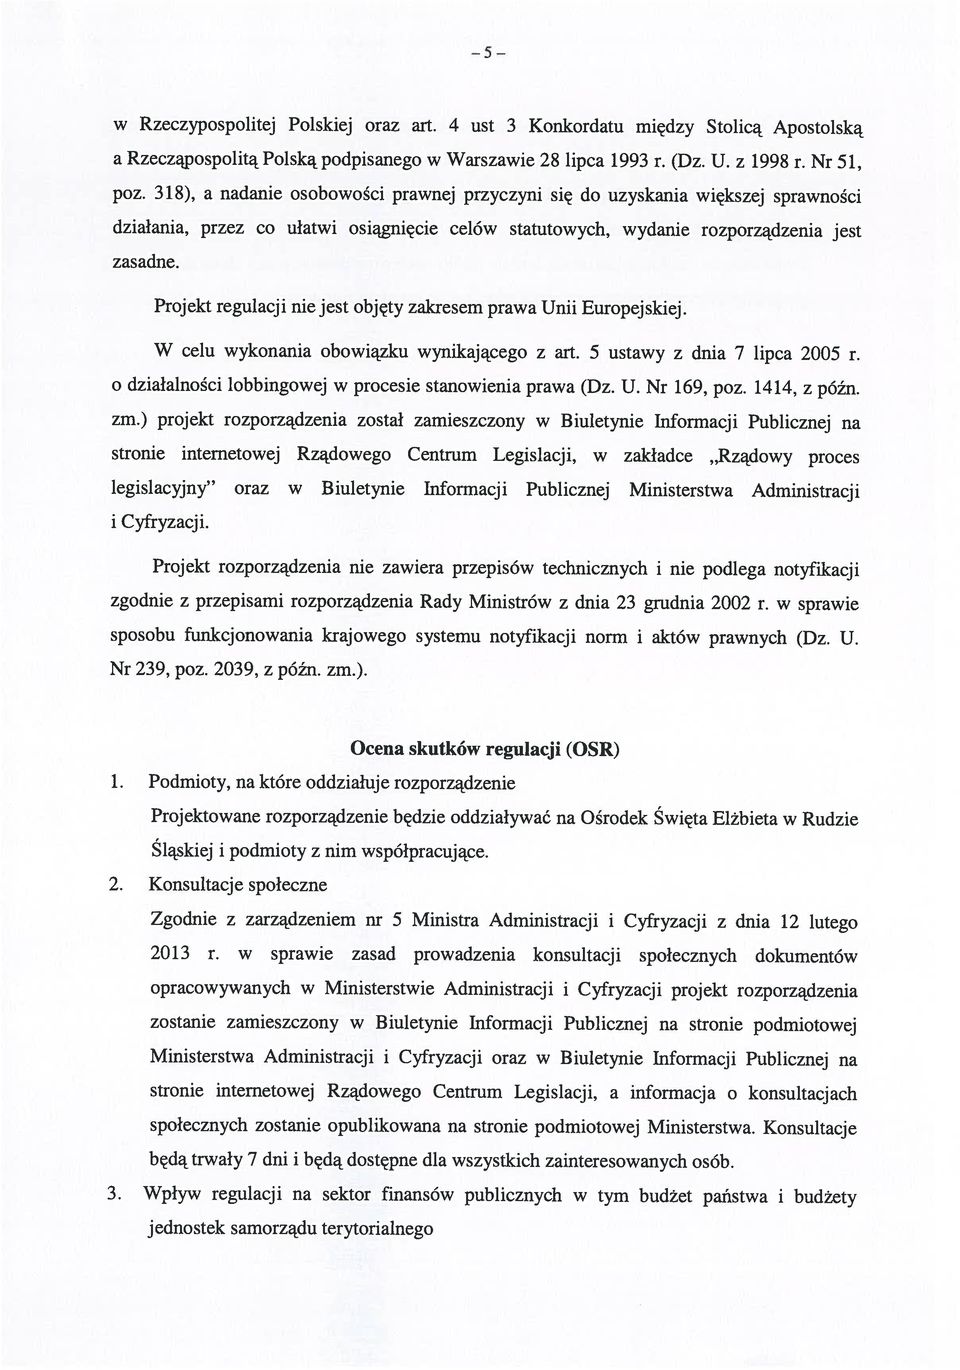 Nr 51, w Rzeczypospolitej Polskiej oraz art. 4 ust 3 Konkordatu między Stolicą Apostolską będą trwały 7 dni i będą dostępne dla wszystkich zainteresowanych osób.